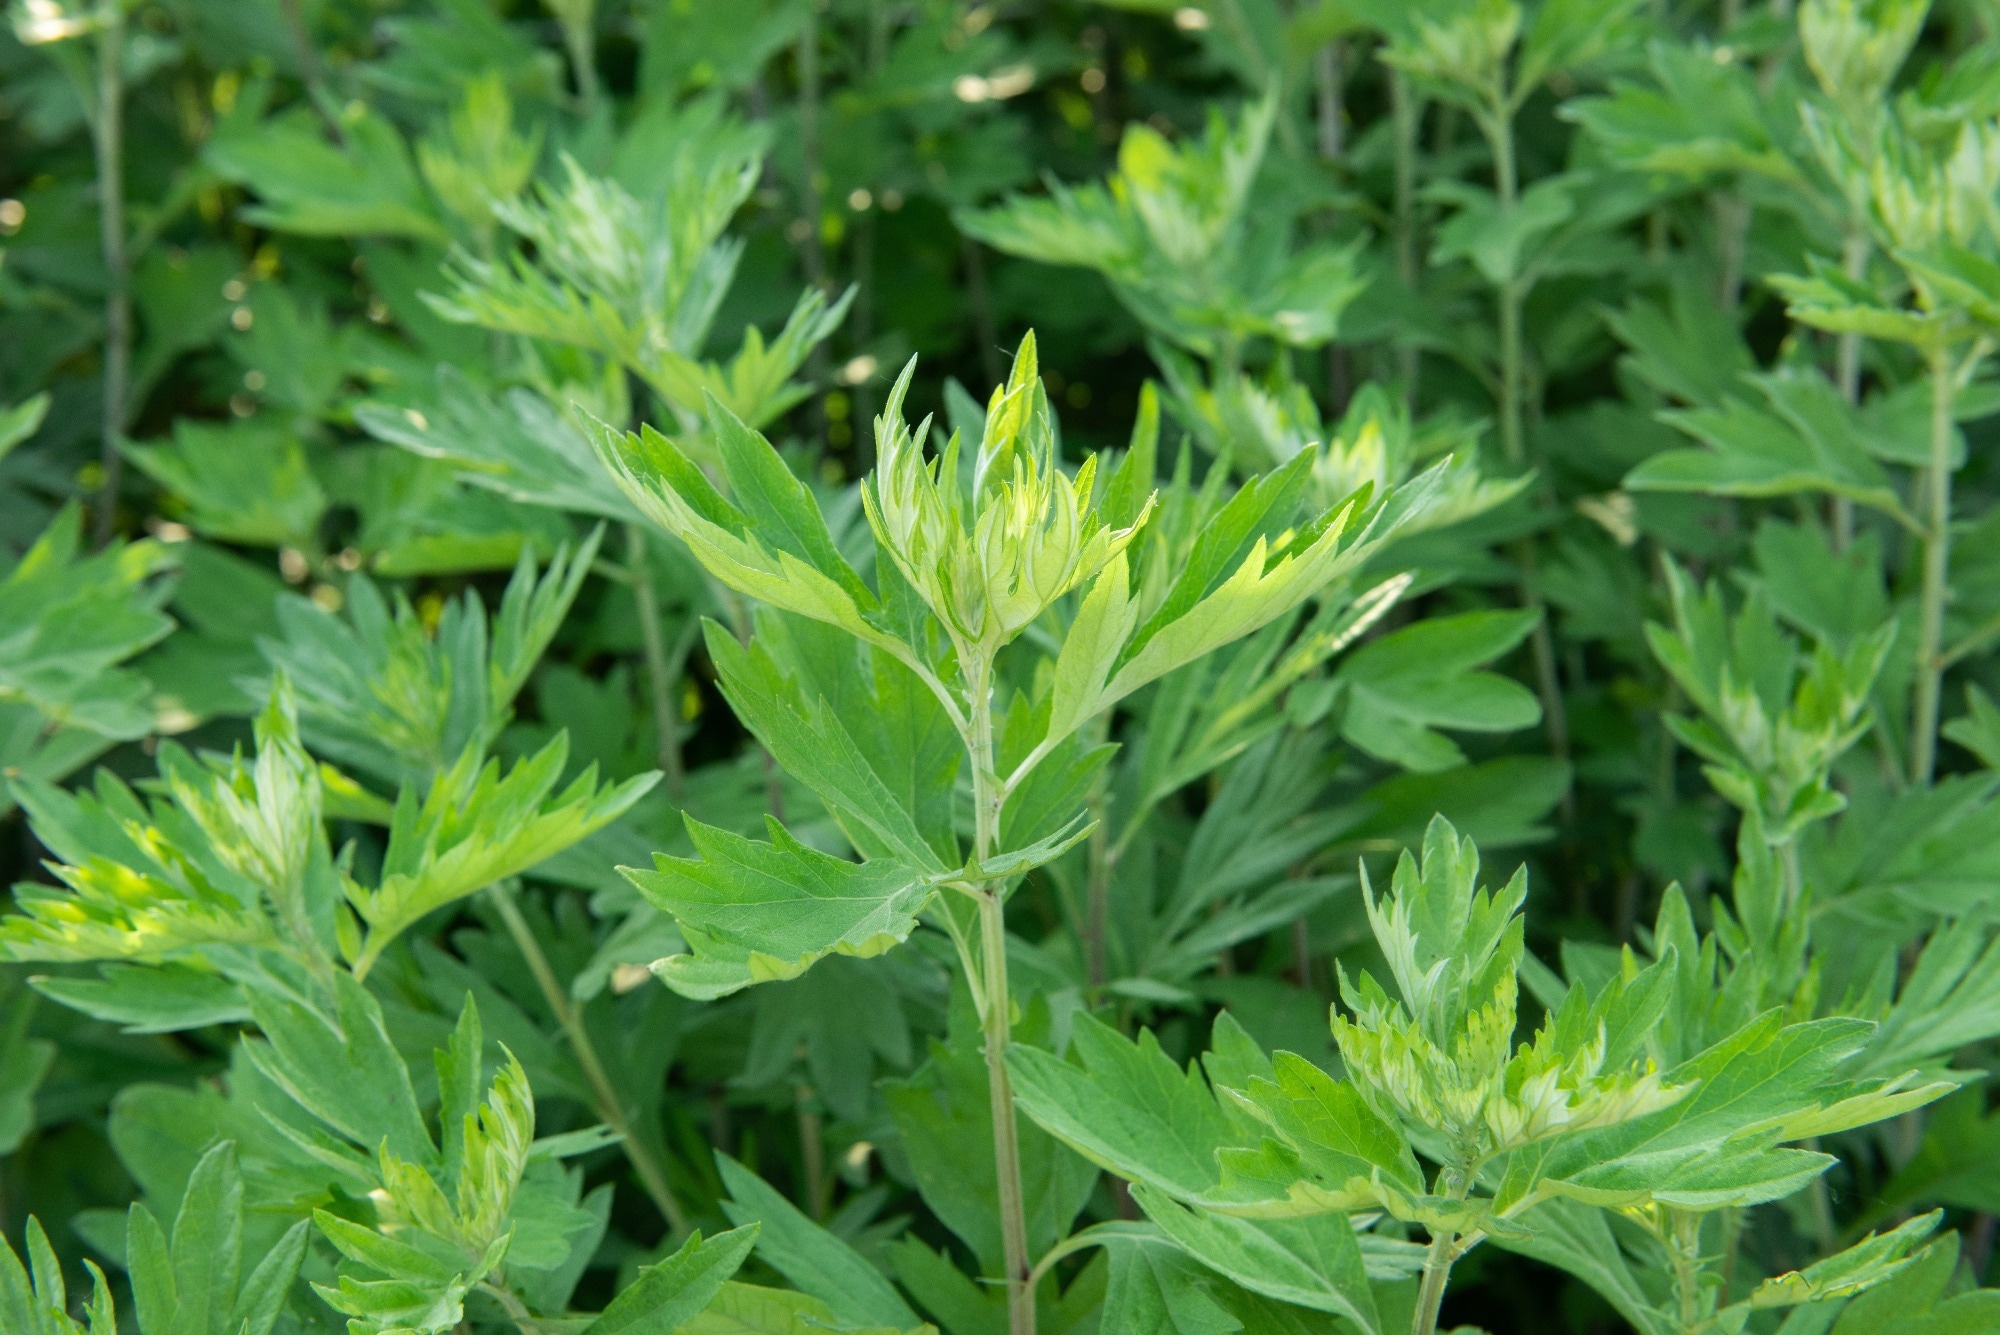 W nowych badaniach wykazano, że ekstrakty roślinne Artemisia argyi i fitochemikalia hamują SARS-CoV-2